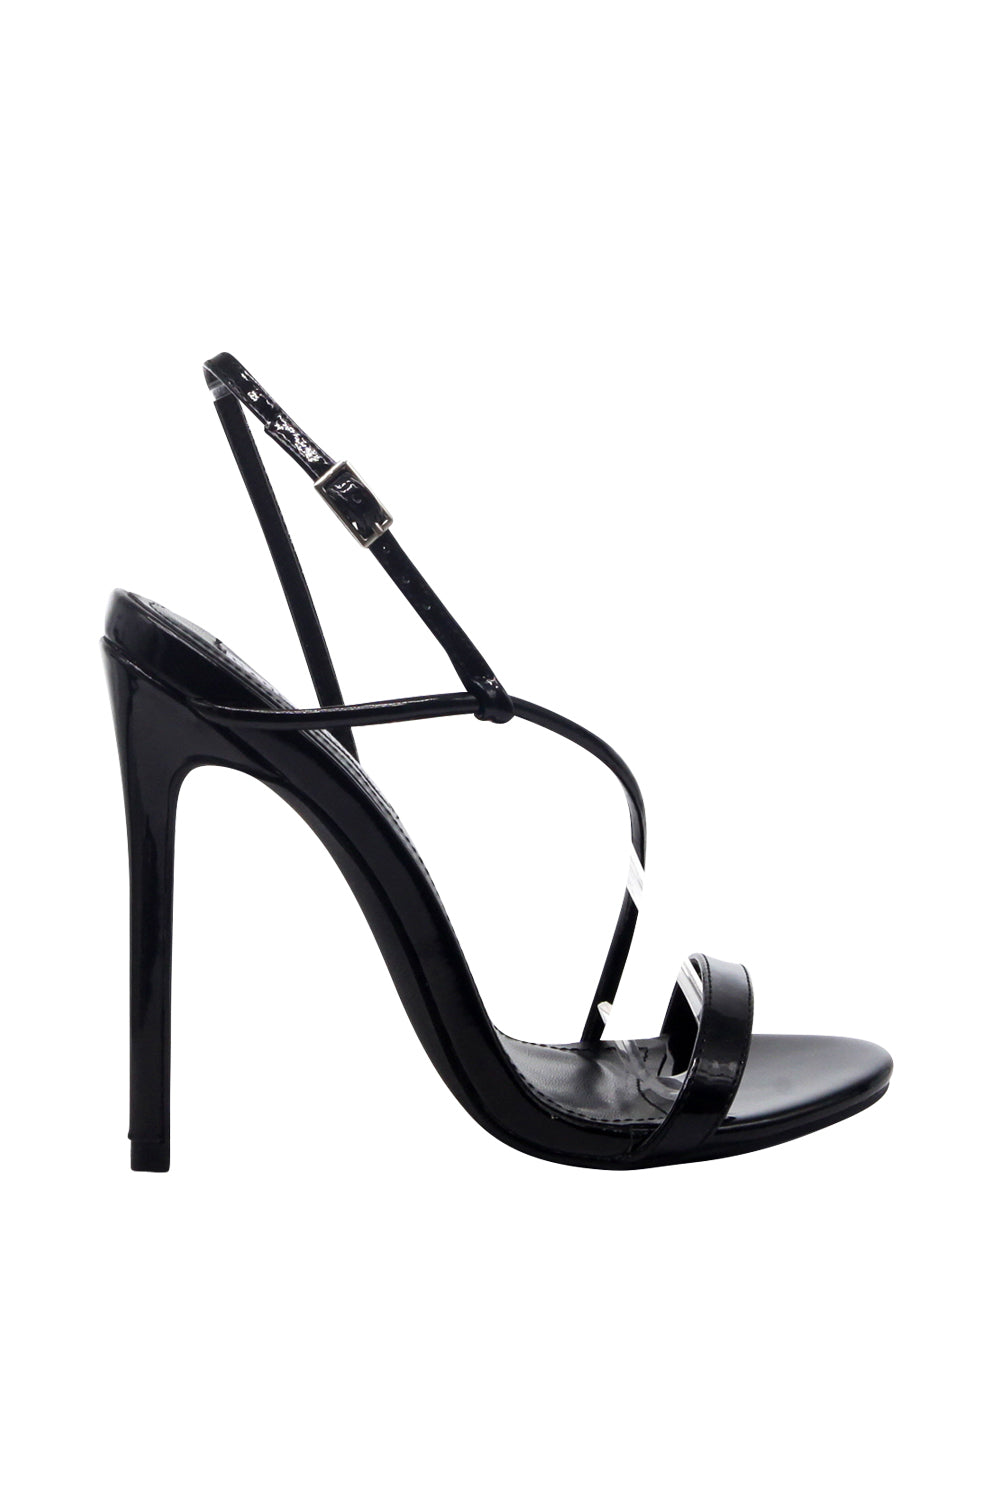 Strappy Stiletto Heel H.heels